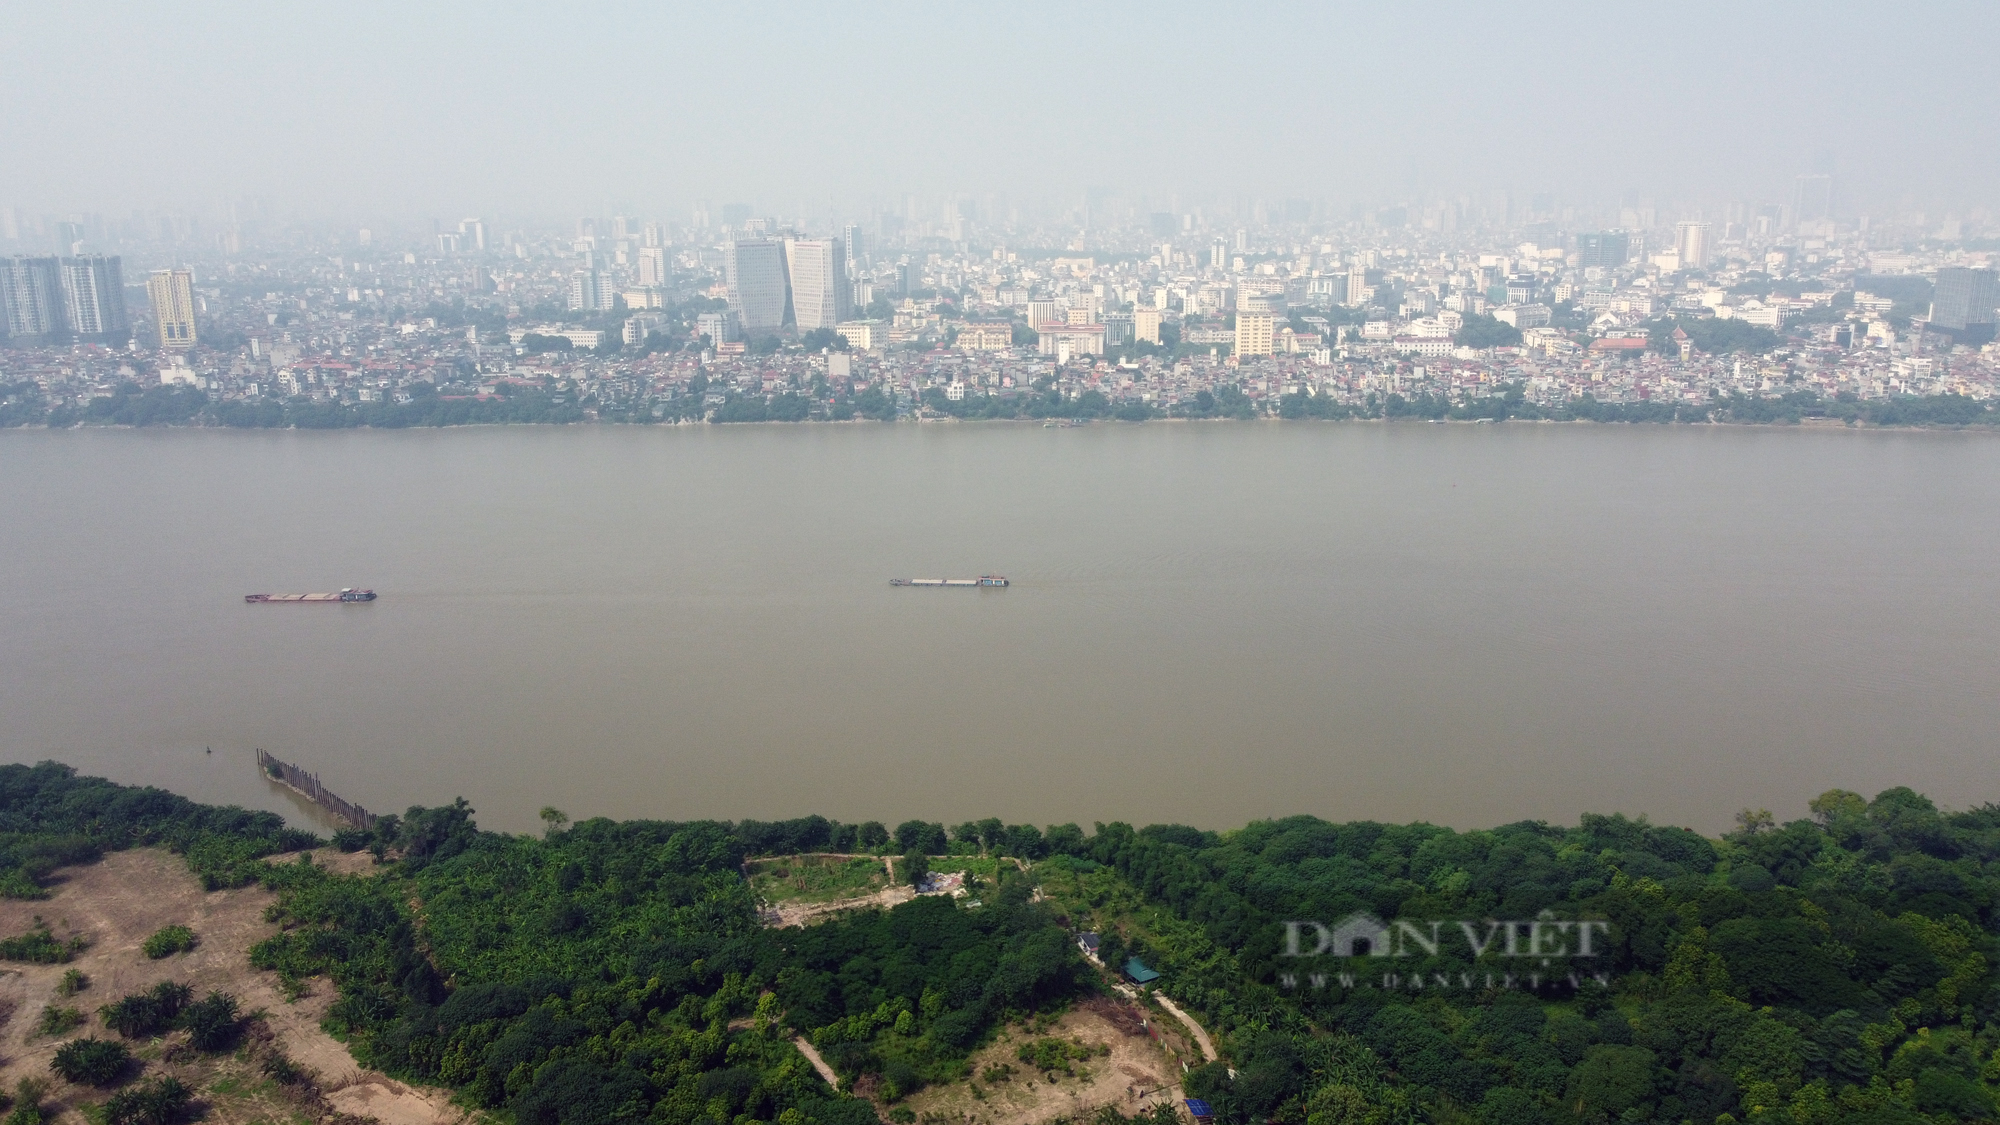 Cận cảnh vị trí xây dựng cầu Trần Hưng Đạo 9.000 tỷ đồng bắc qua sông Hồng - Ảnh 6.